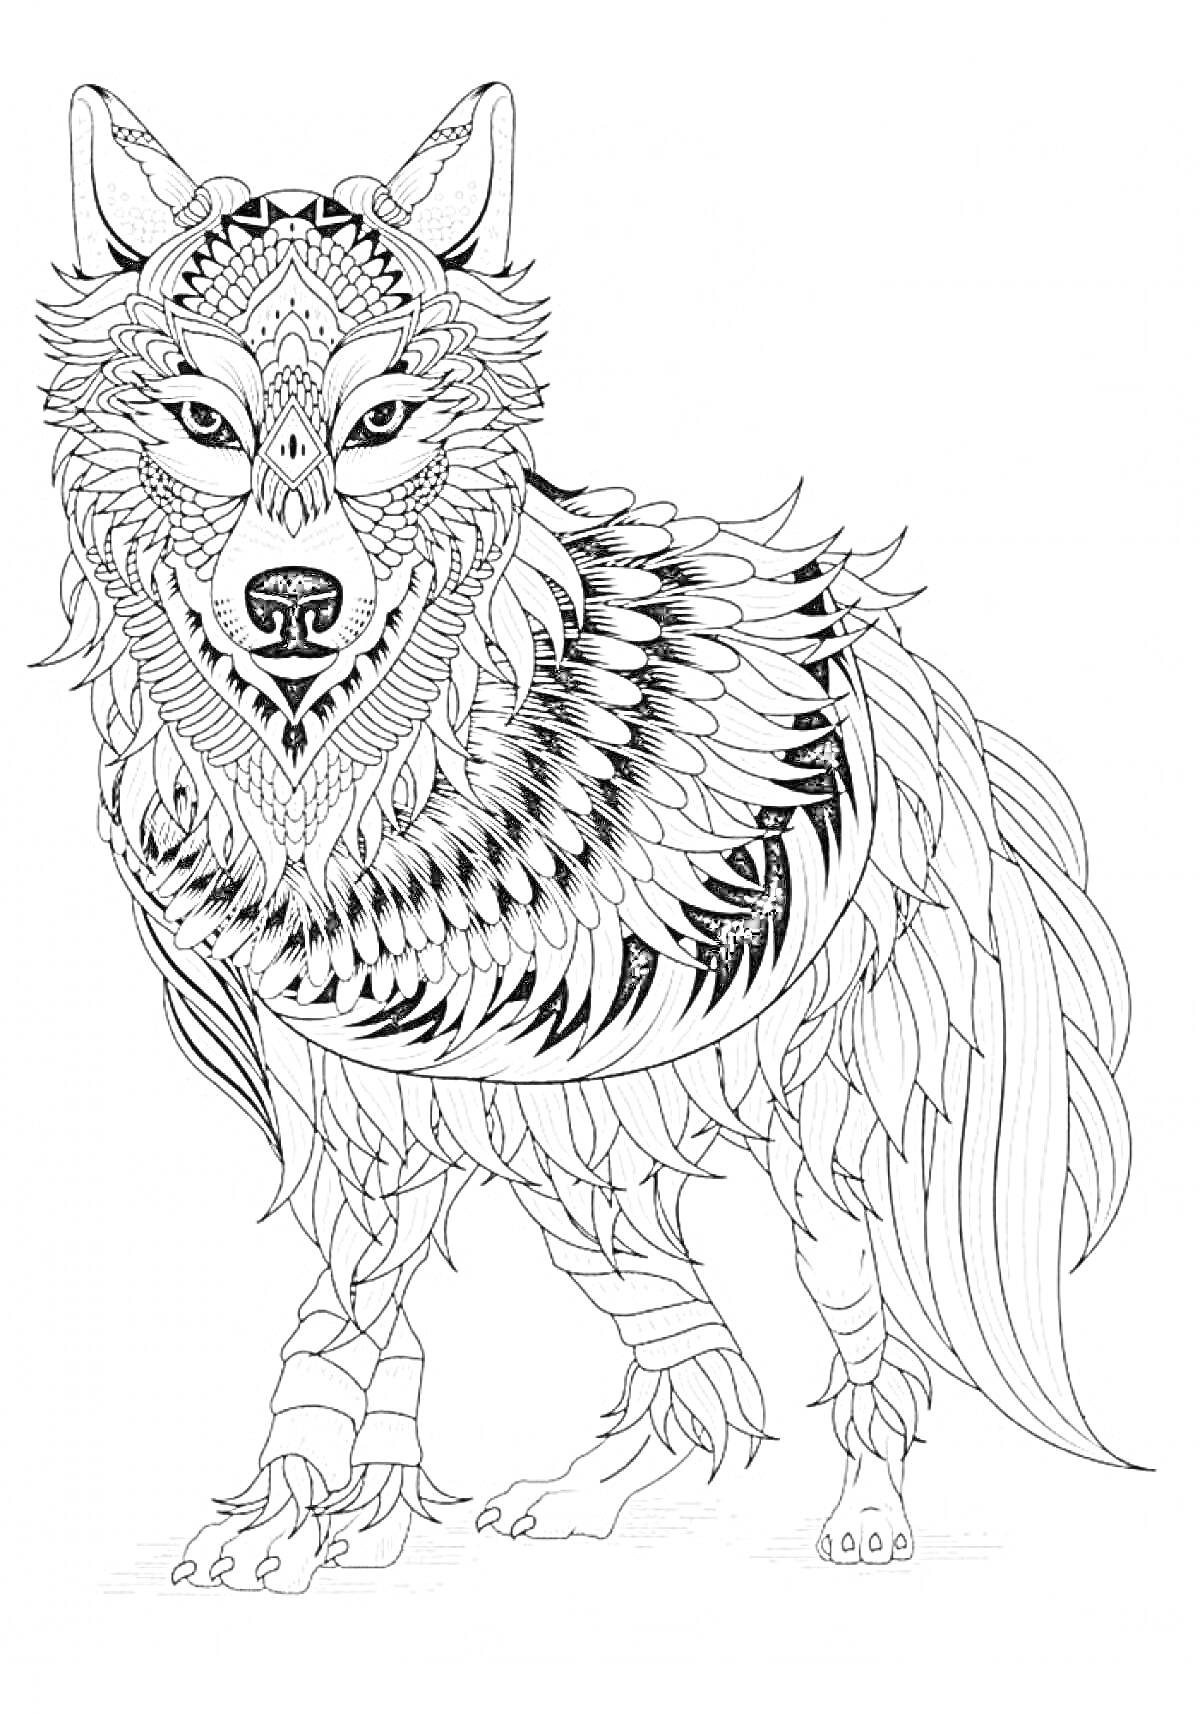 Раскраска Волк с узорами на теле